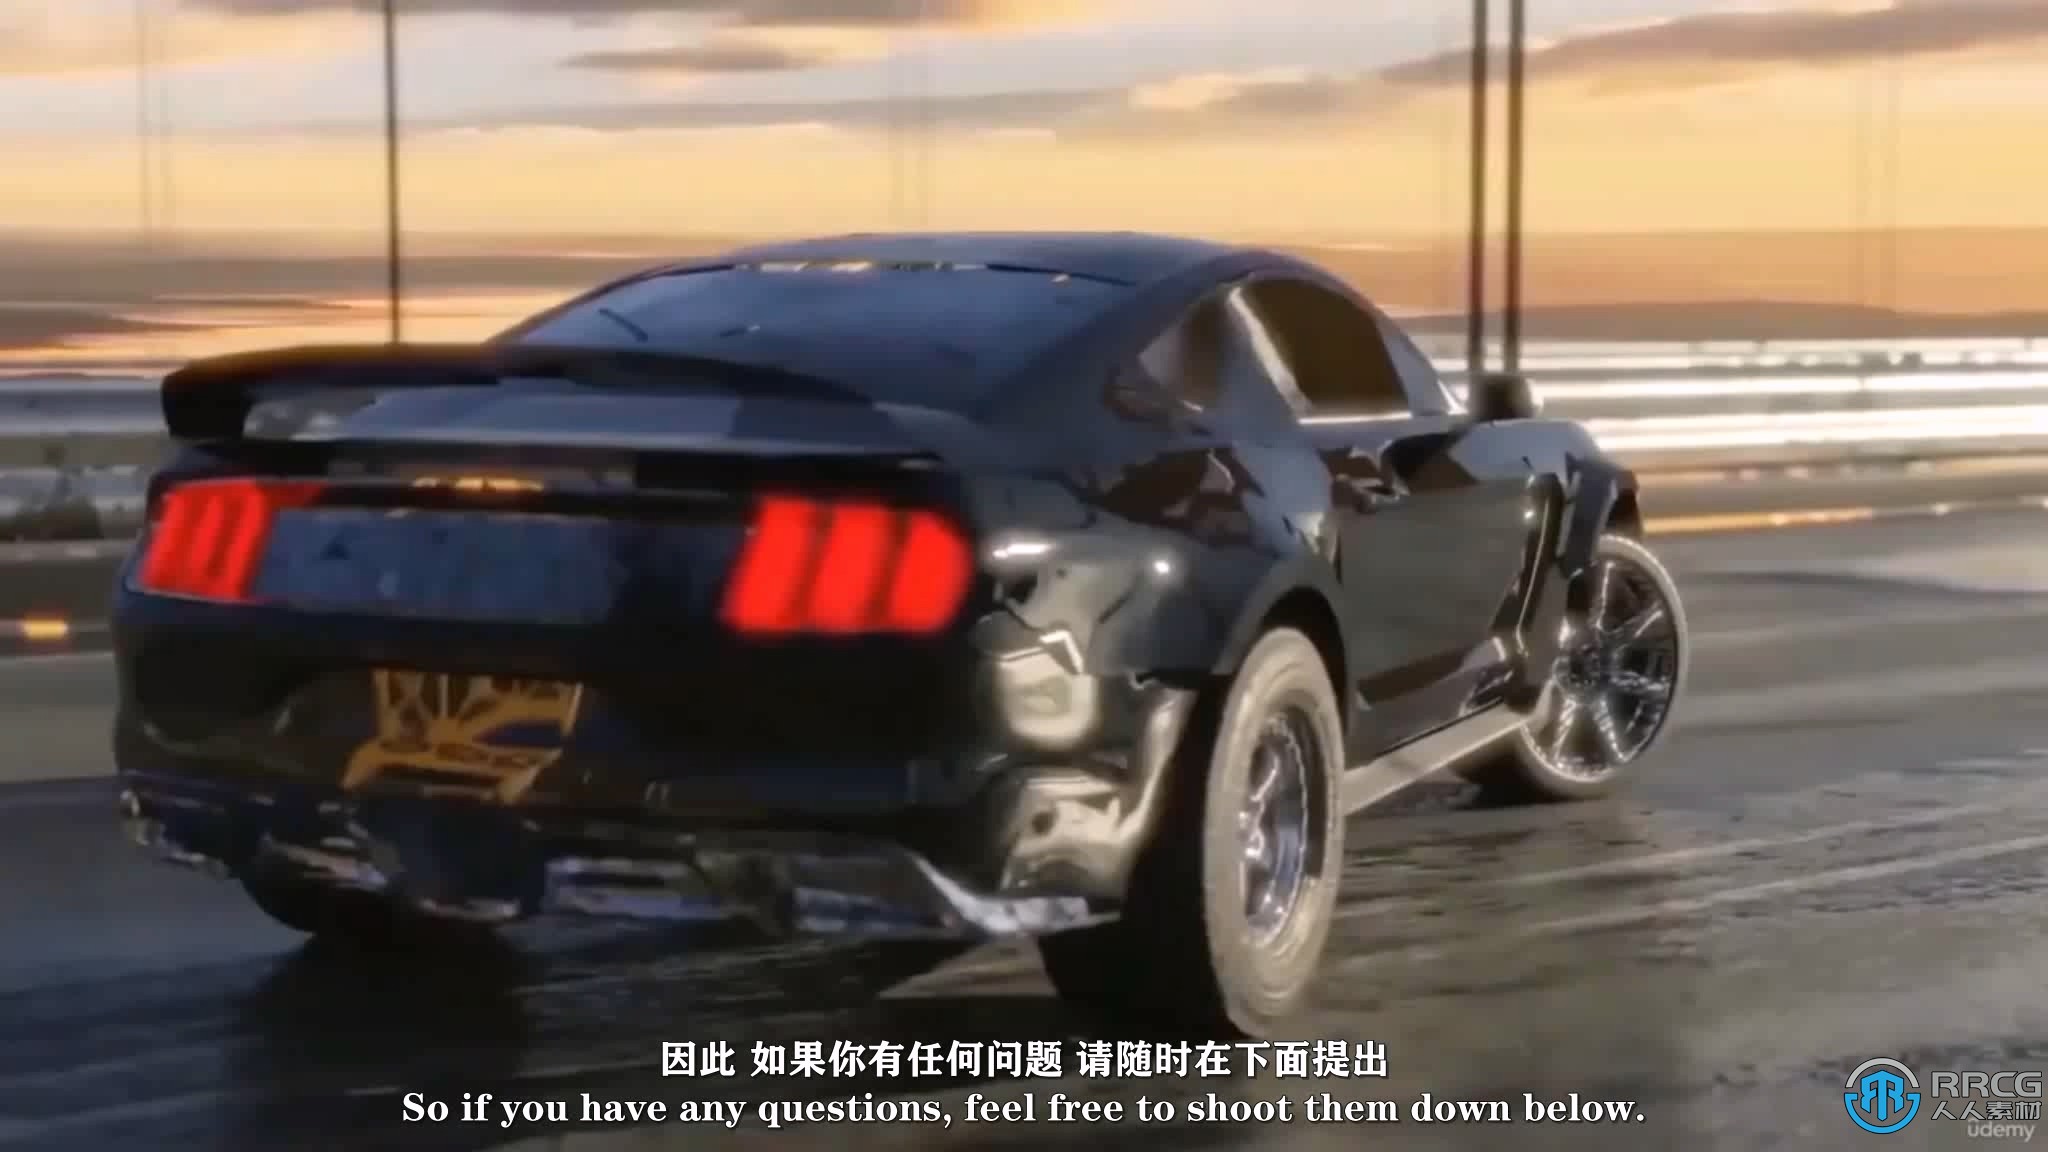 【中文字幕】Blender中制作电影级汽车追逐短片动画视频教程